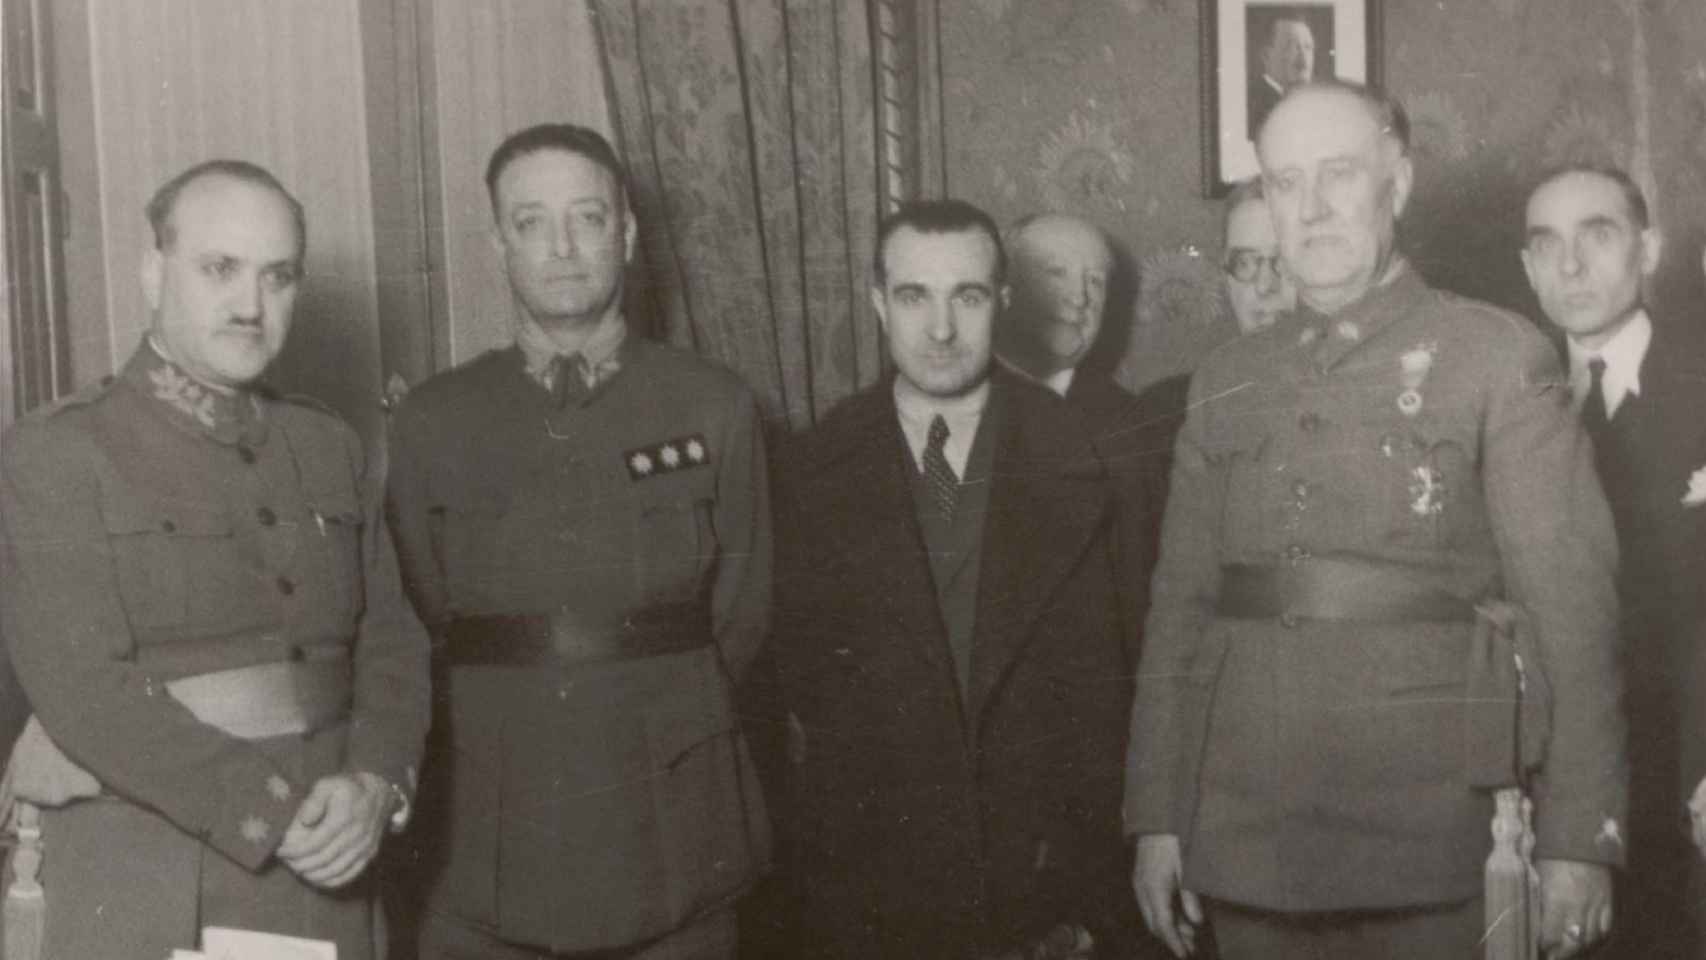 El general José Ungría, segundo por la izquierda, fue el máximo responsable del espionaje franquista en la guerra.